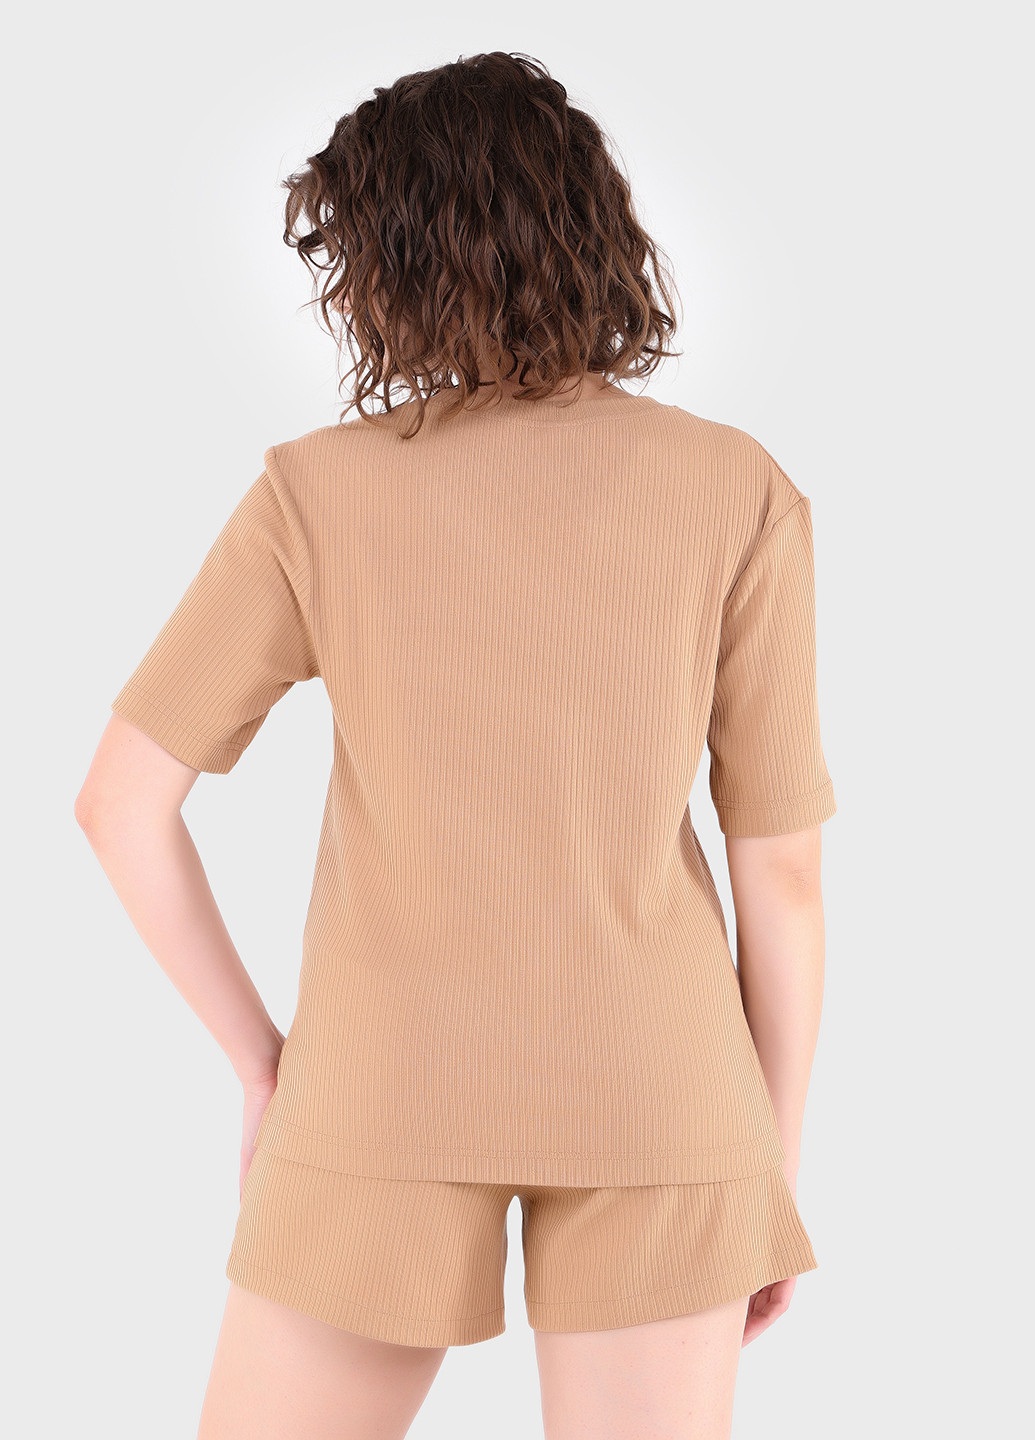 Бежевая летняя легкая футболка женская в рубчик 800000028 с коротким рукавом Merlini Корунья